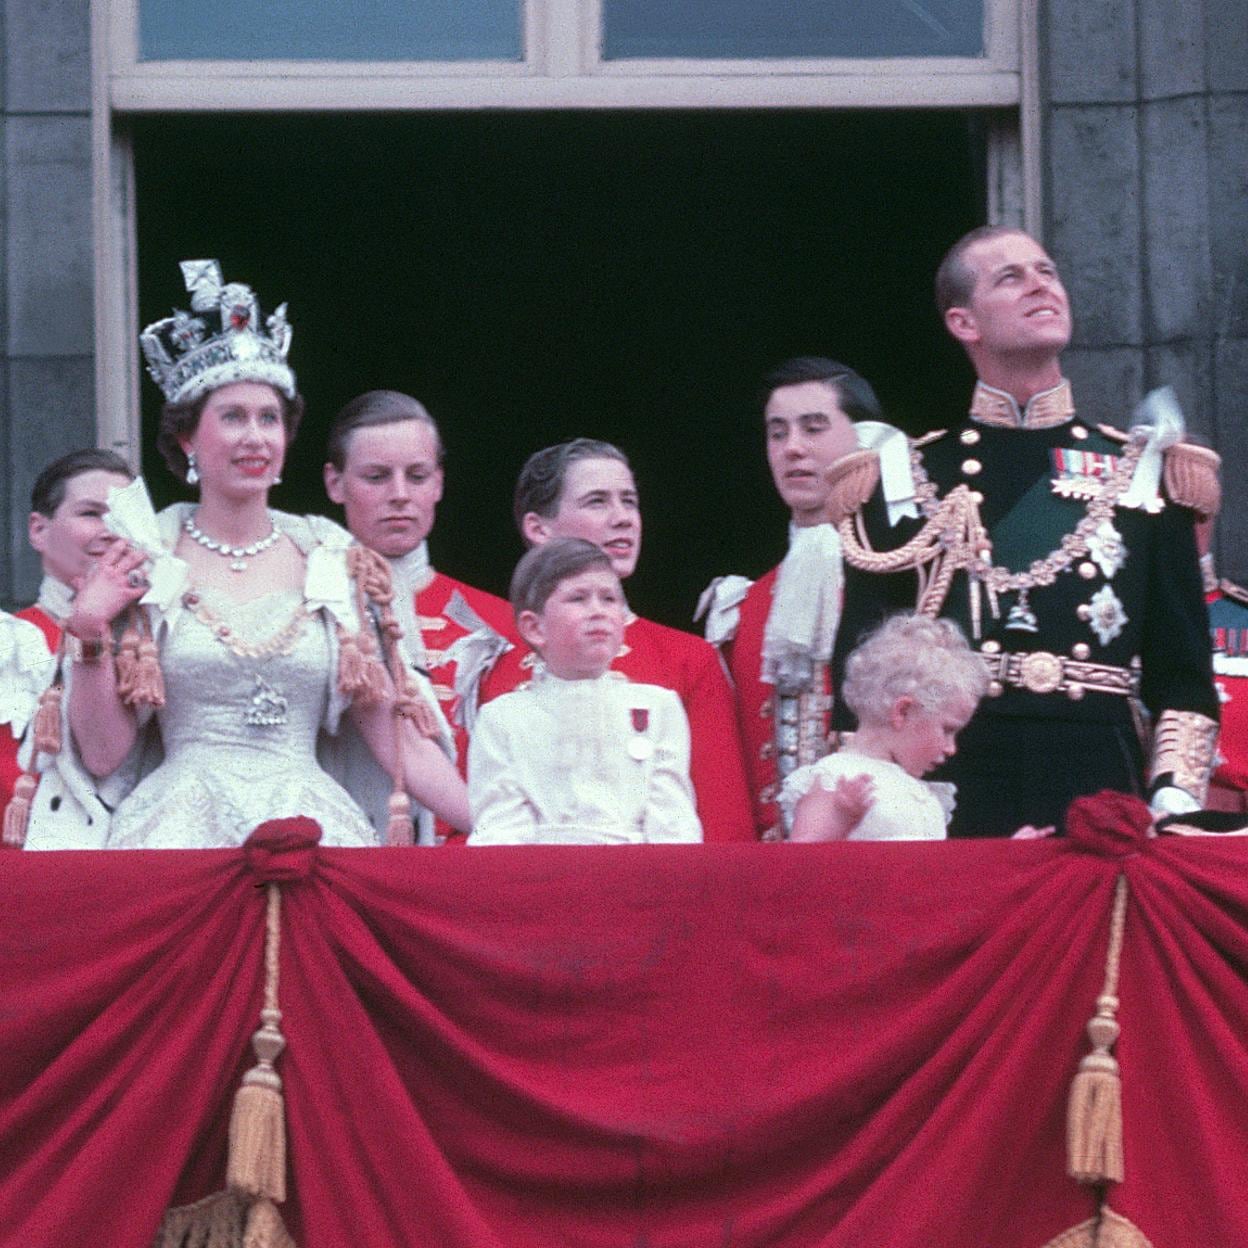 Isabel II el día de su coronación con el príncipe Carlos, la princesa Ana y Felipe de Edimburgo./getty